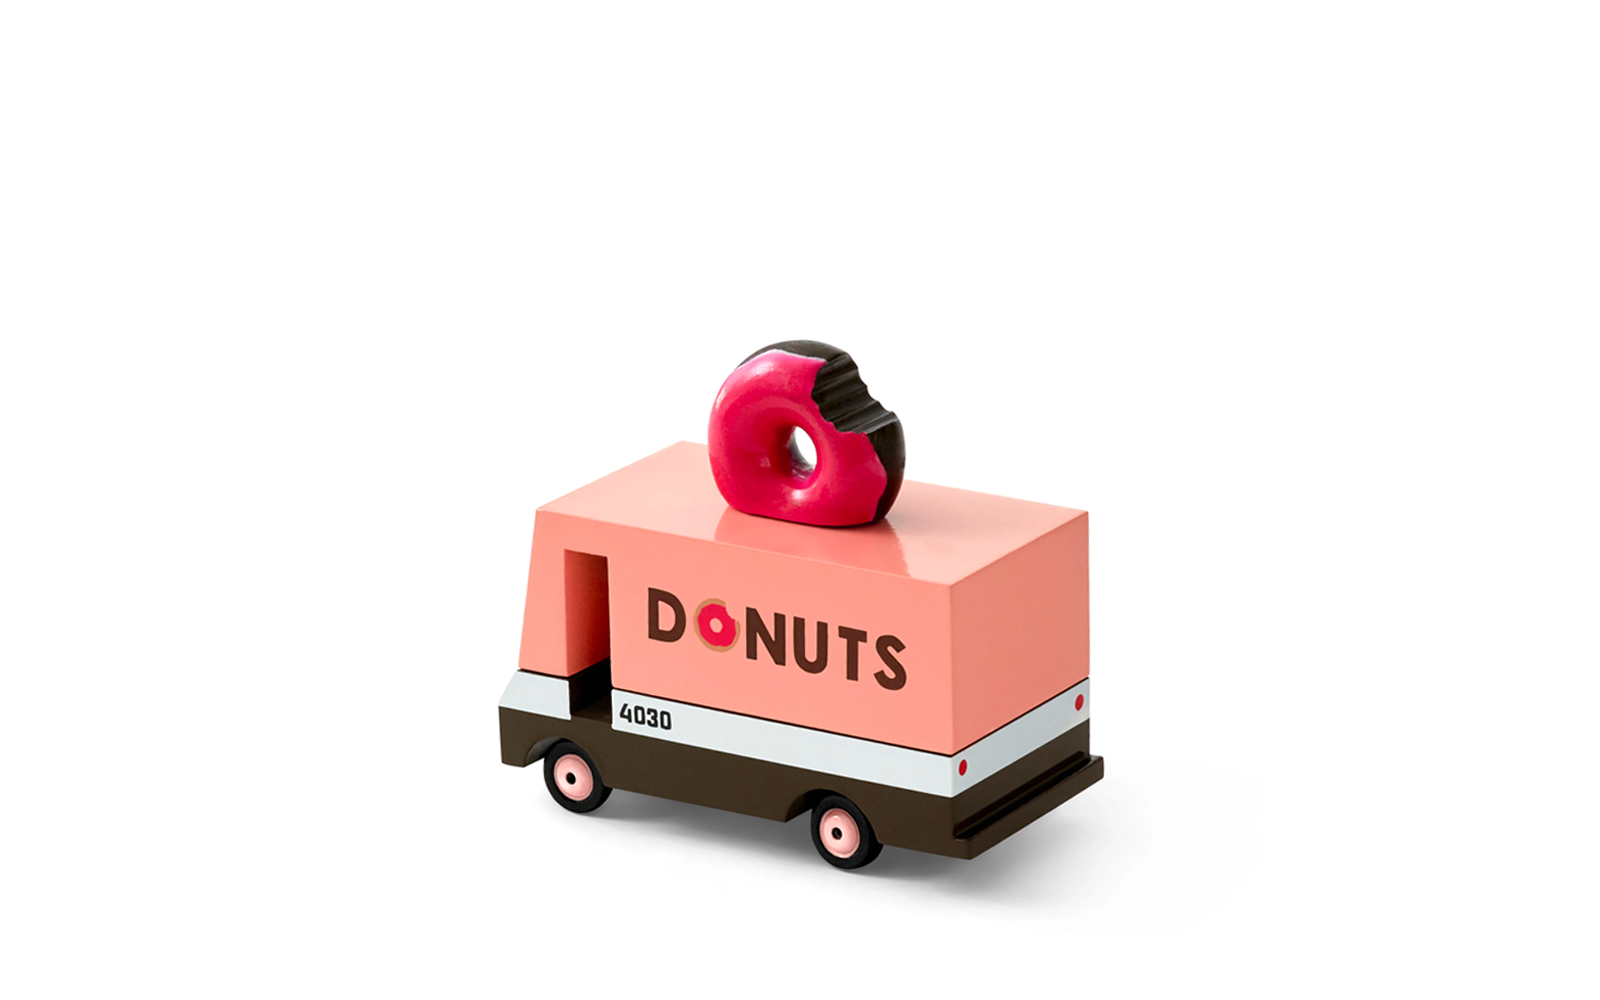 Candyvans Camión de donuts